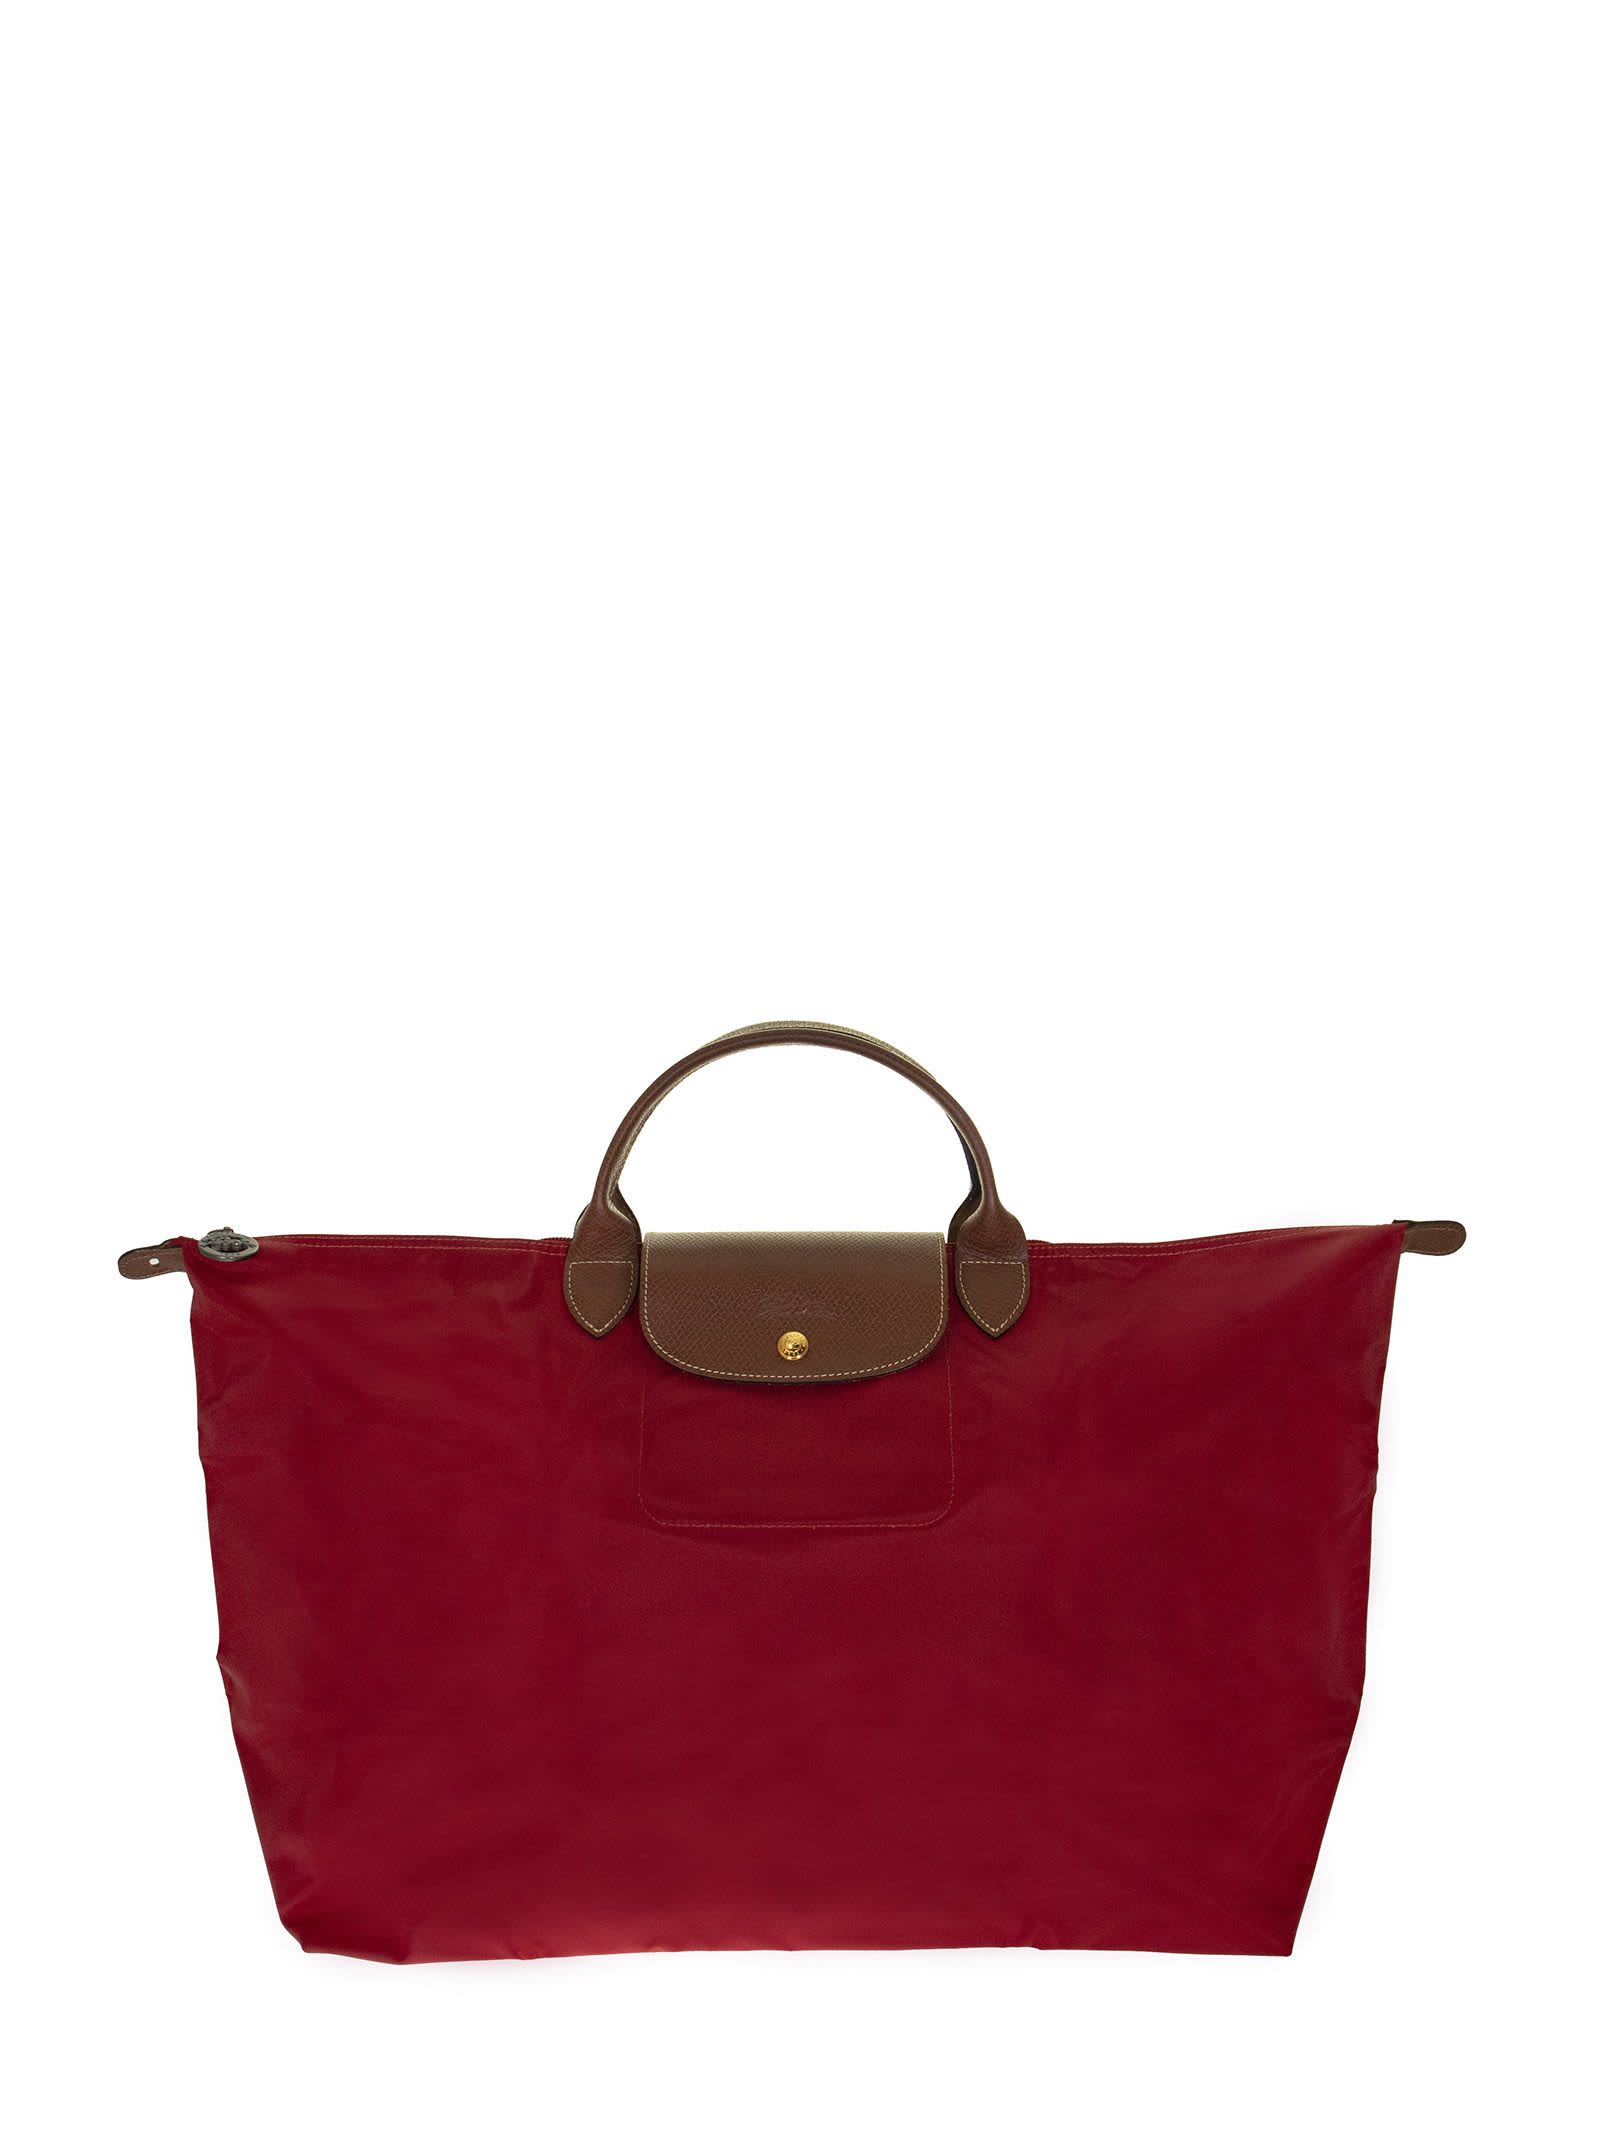 Longchamp Le Pliage - Original Travel Bag